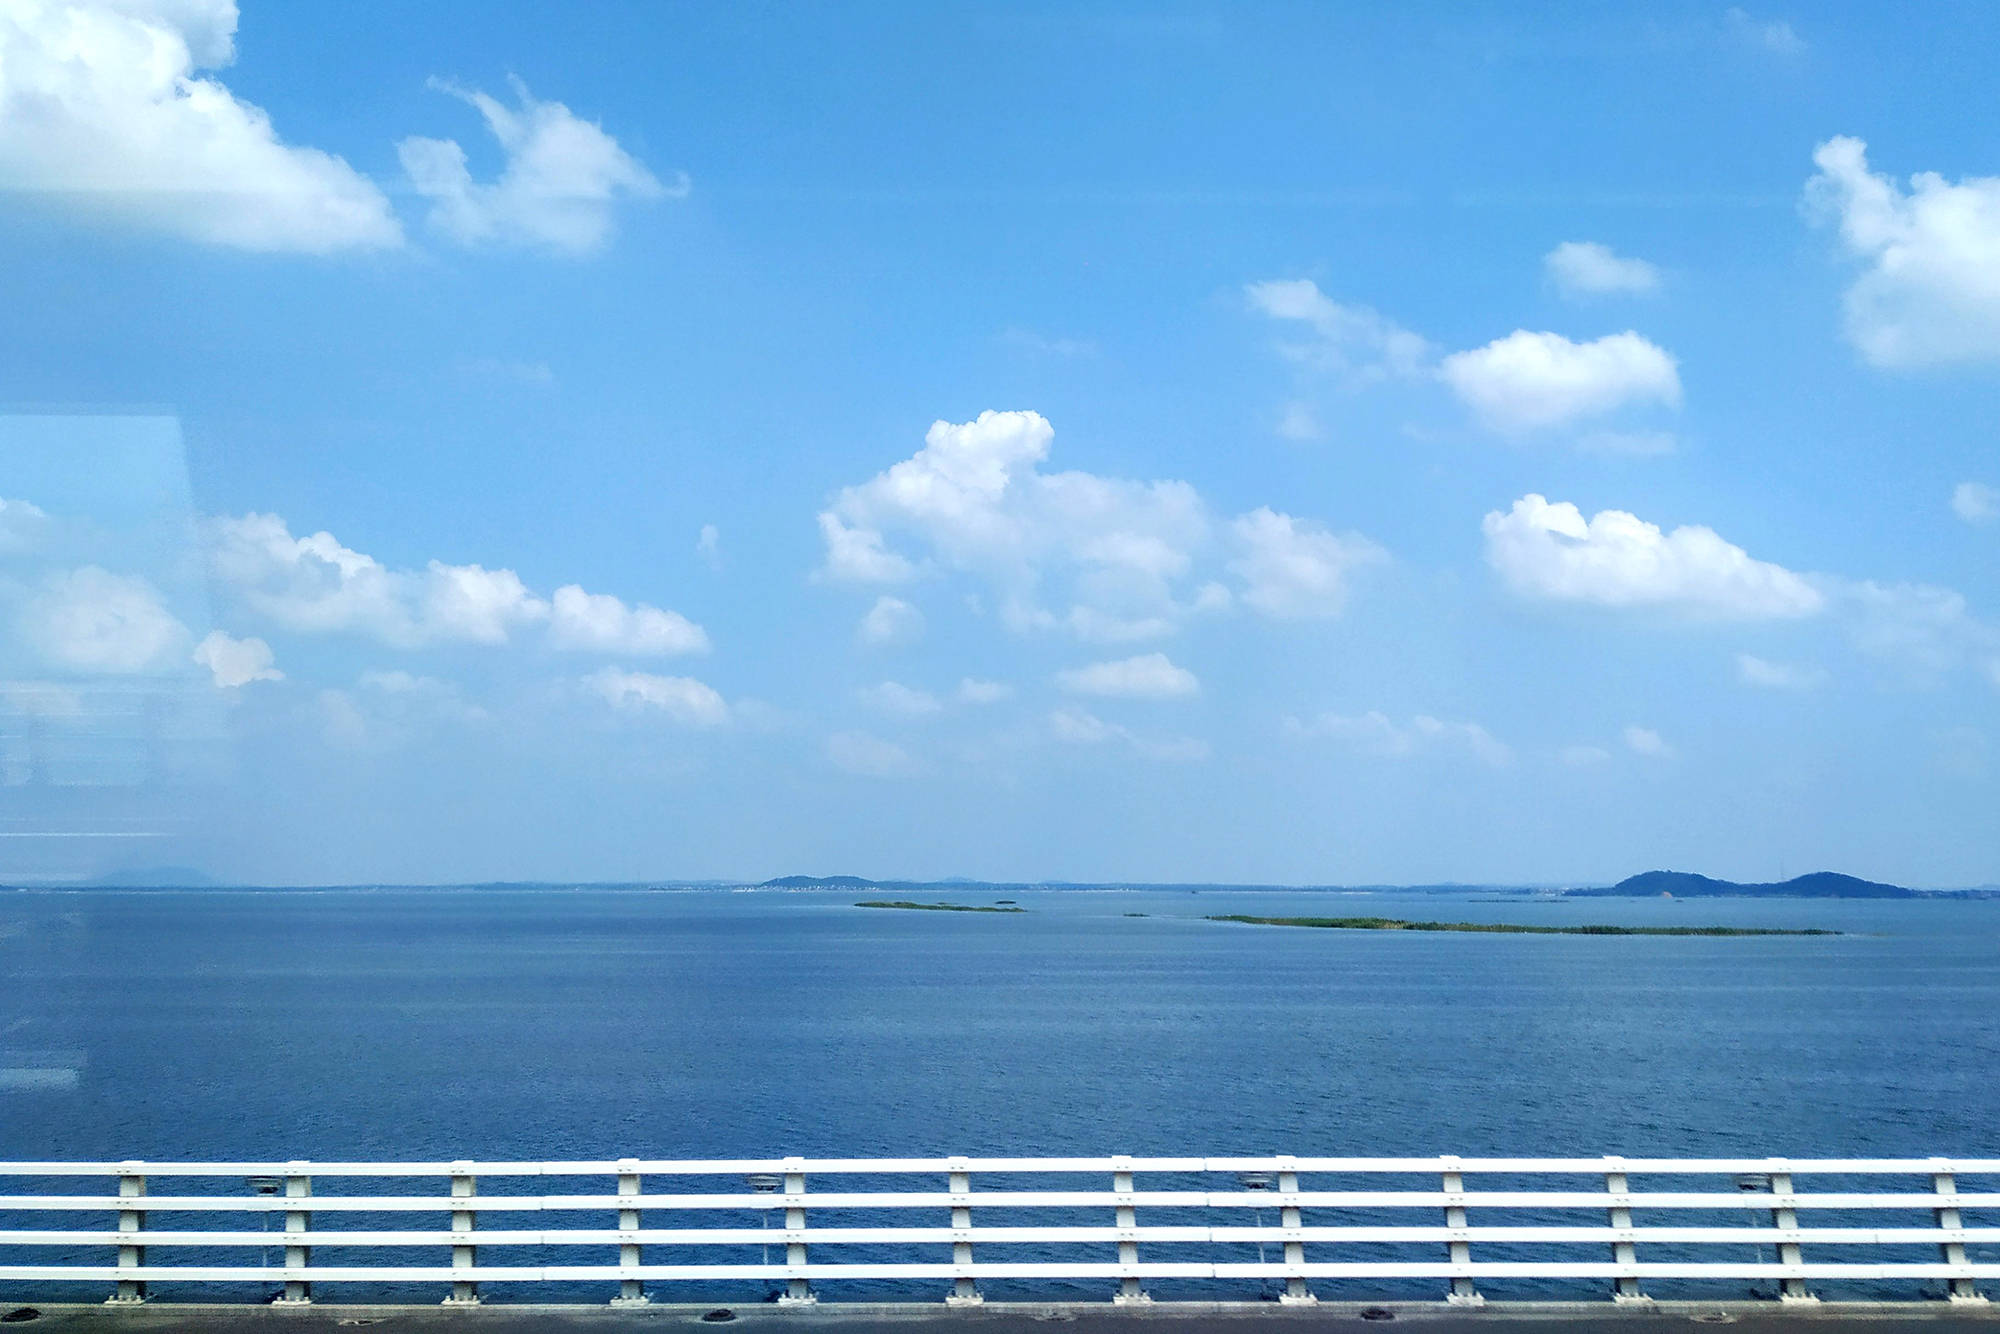 原创南京也有天空之镜就藏在石臼湖在地铁上就可以观赏美景